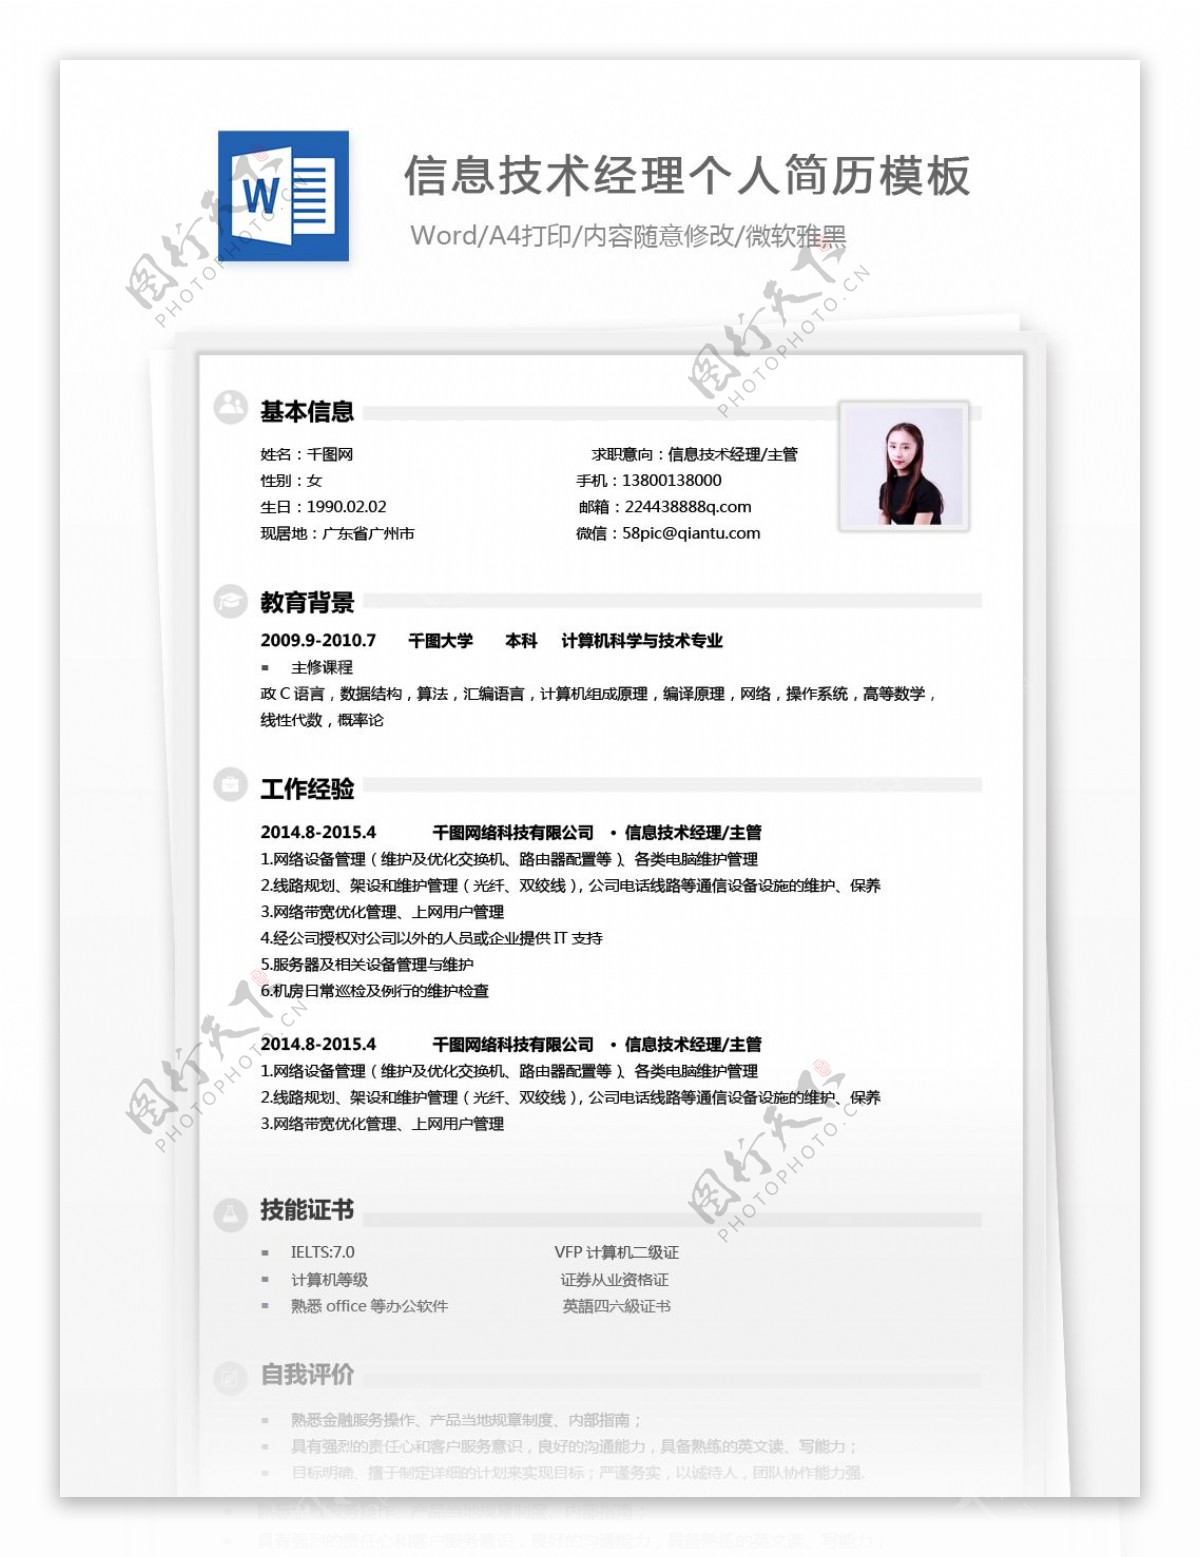 刘慕瑶信息技术经理主管个人简历模板